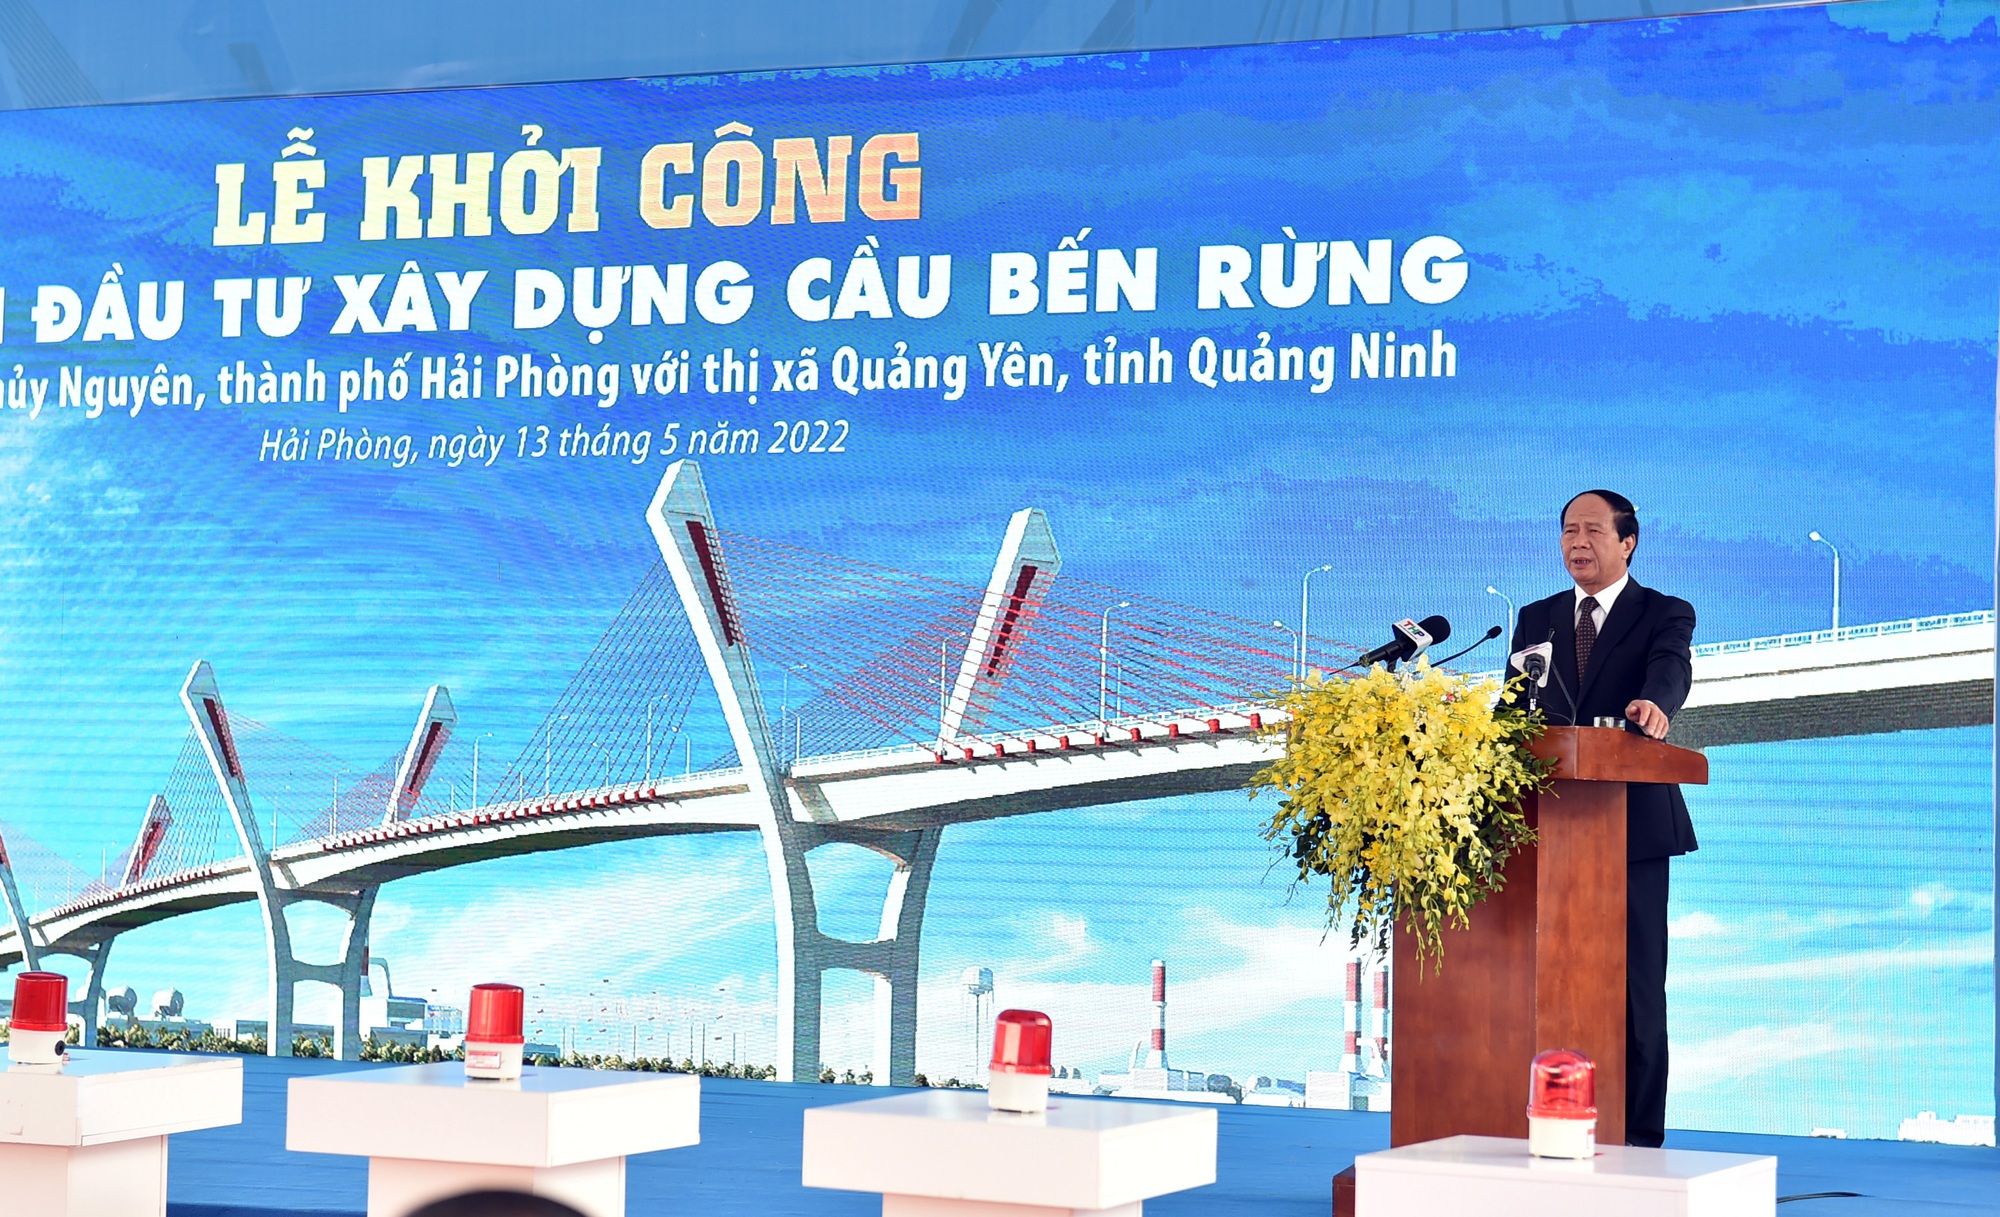 Phó Thủ tướng Lê Văn Thành bấm nút khởi công xây dựng cầu Bến Rừng, nối Hải Phòng với Quảng Ninh - Ảnh 1.